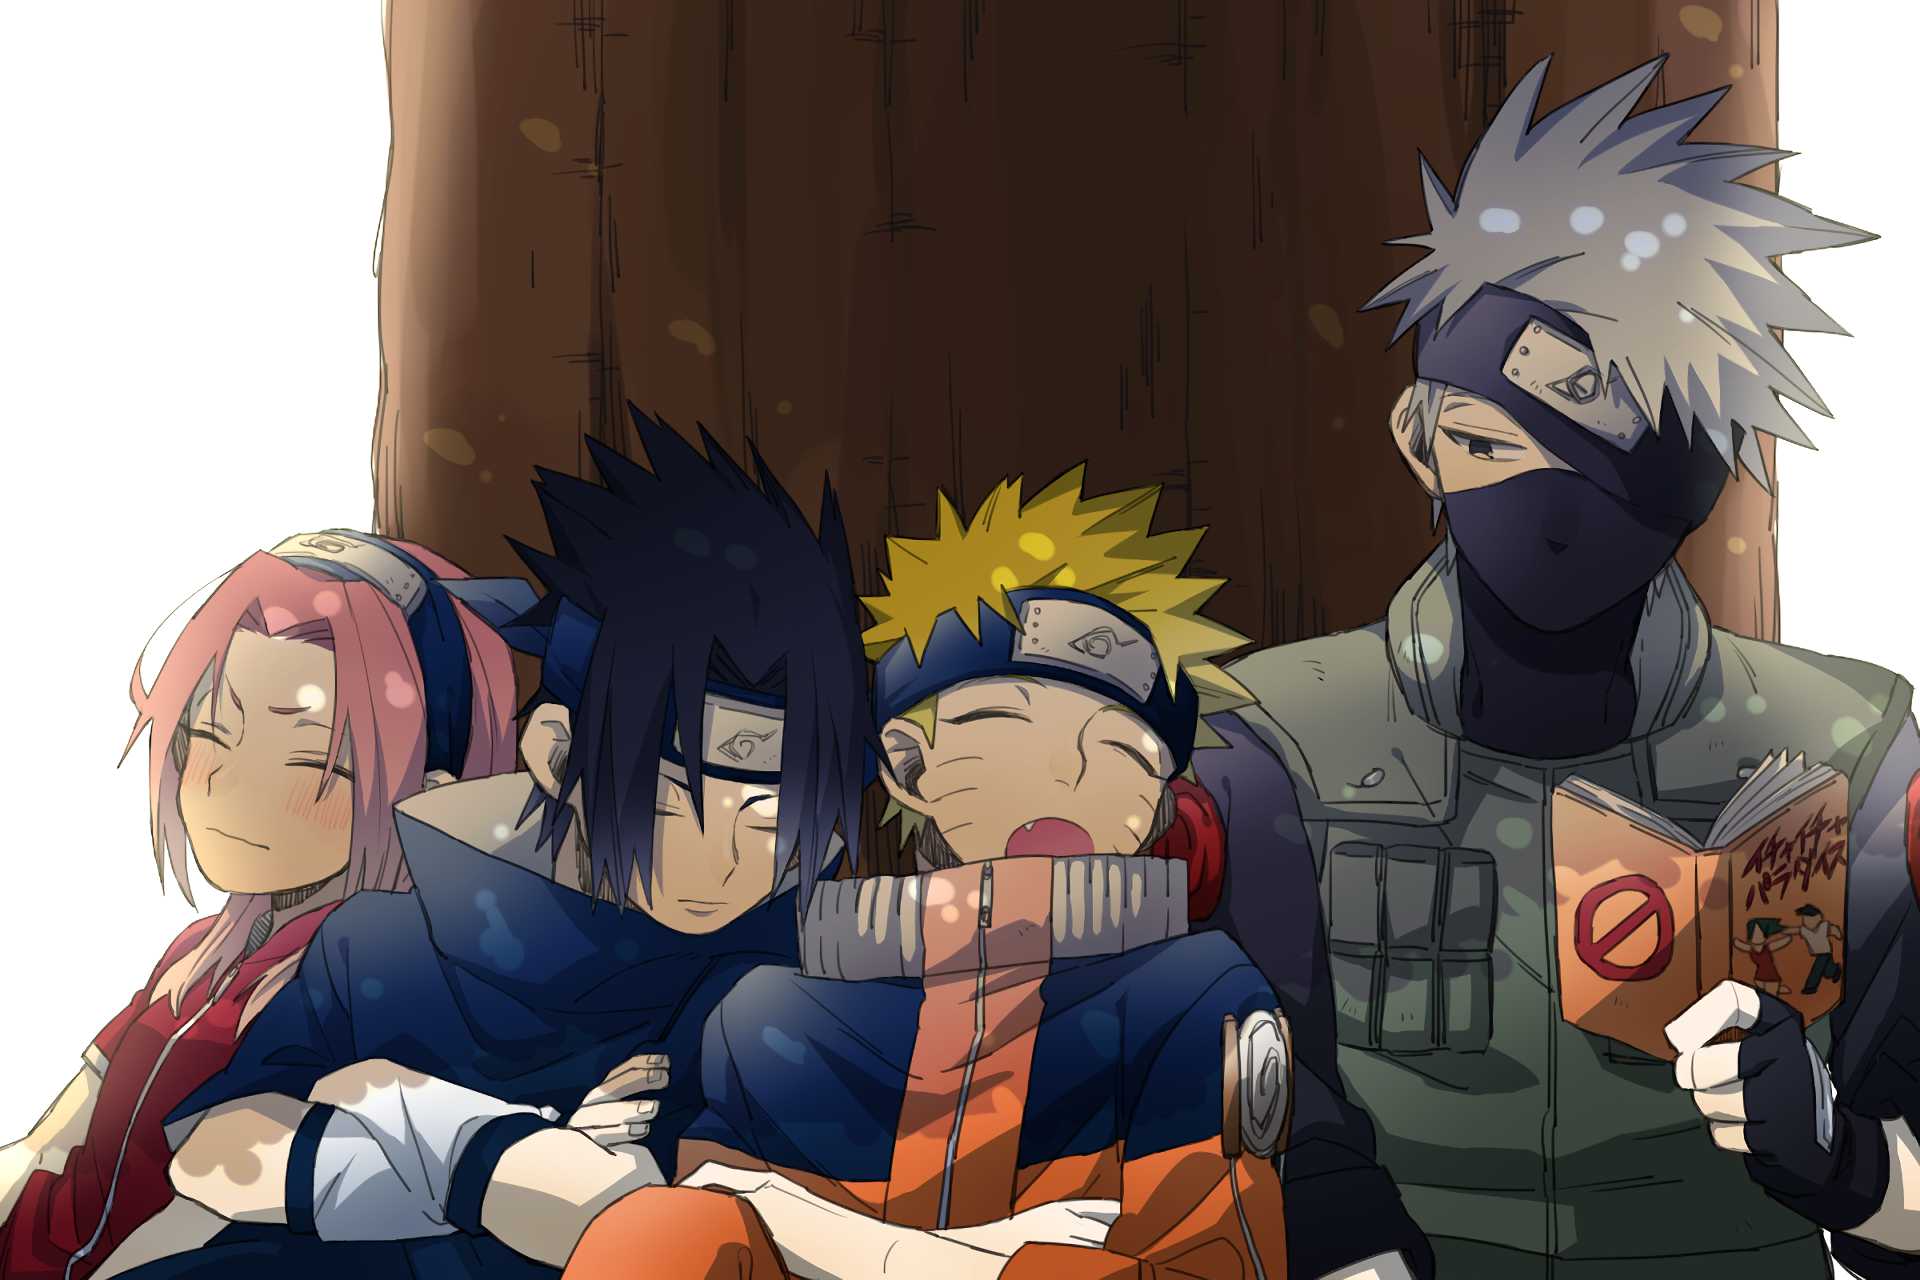 Nếu bạn là fan của Naruto thì hình nền Naruto là một lựa chọn tuyệt vời để trang trí cho chiếc điện thoại hoặc máy tính của mình. Hình ảnh Naruto sẽ mang đến cho bạn một cảm giác bảo vệ và khả năng chiến đấu để bạn cảm nhận được tính cách của nhân vật này.